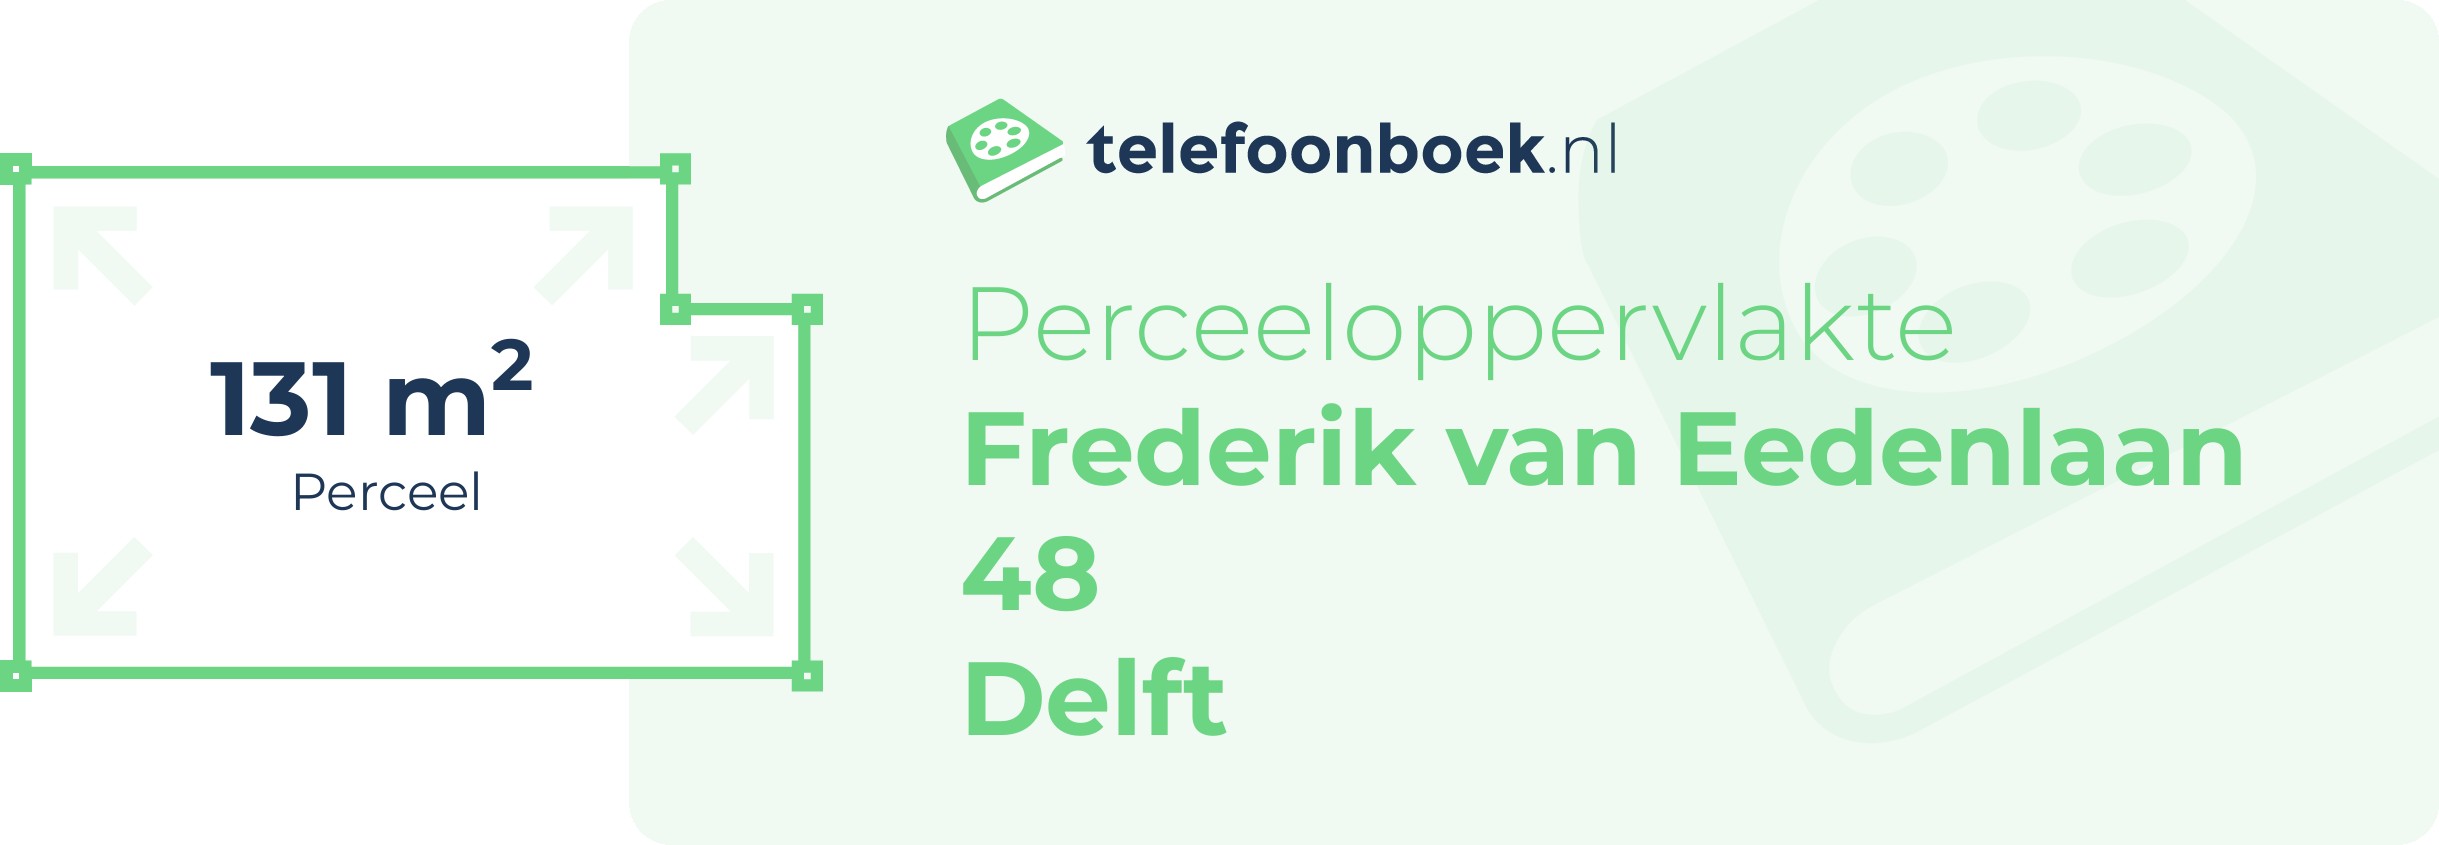 Perceeloppervlakte Frederik Van Eedenlaan 48 Delft